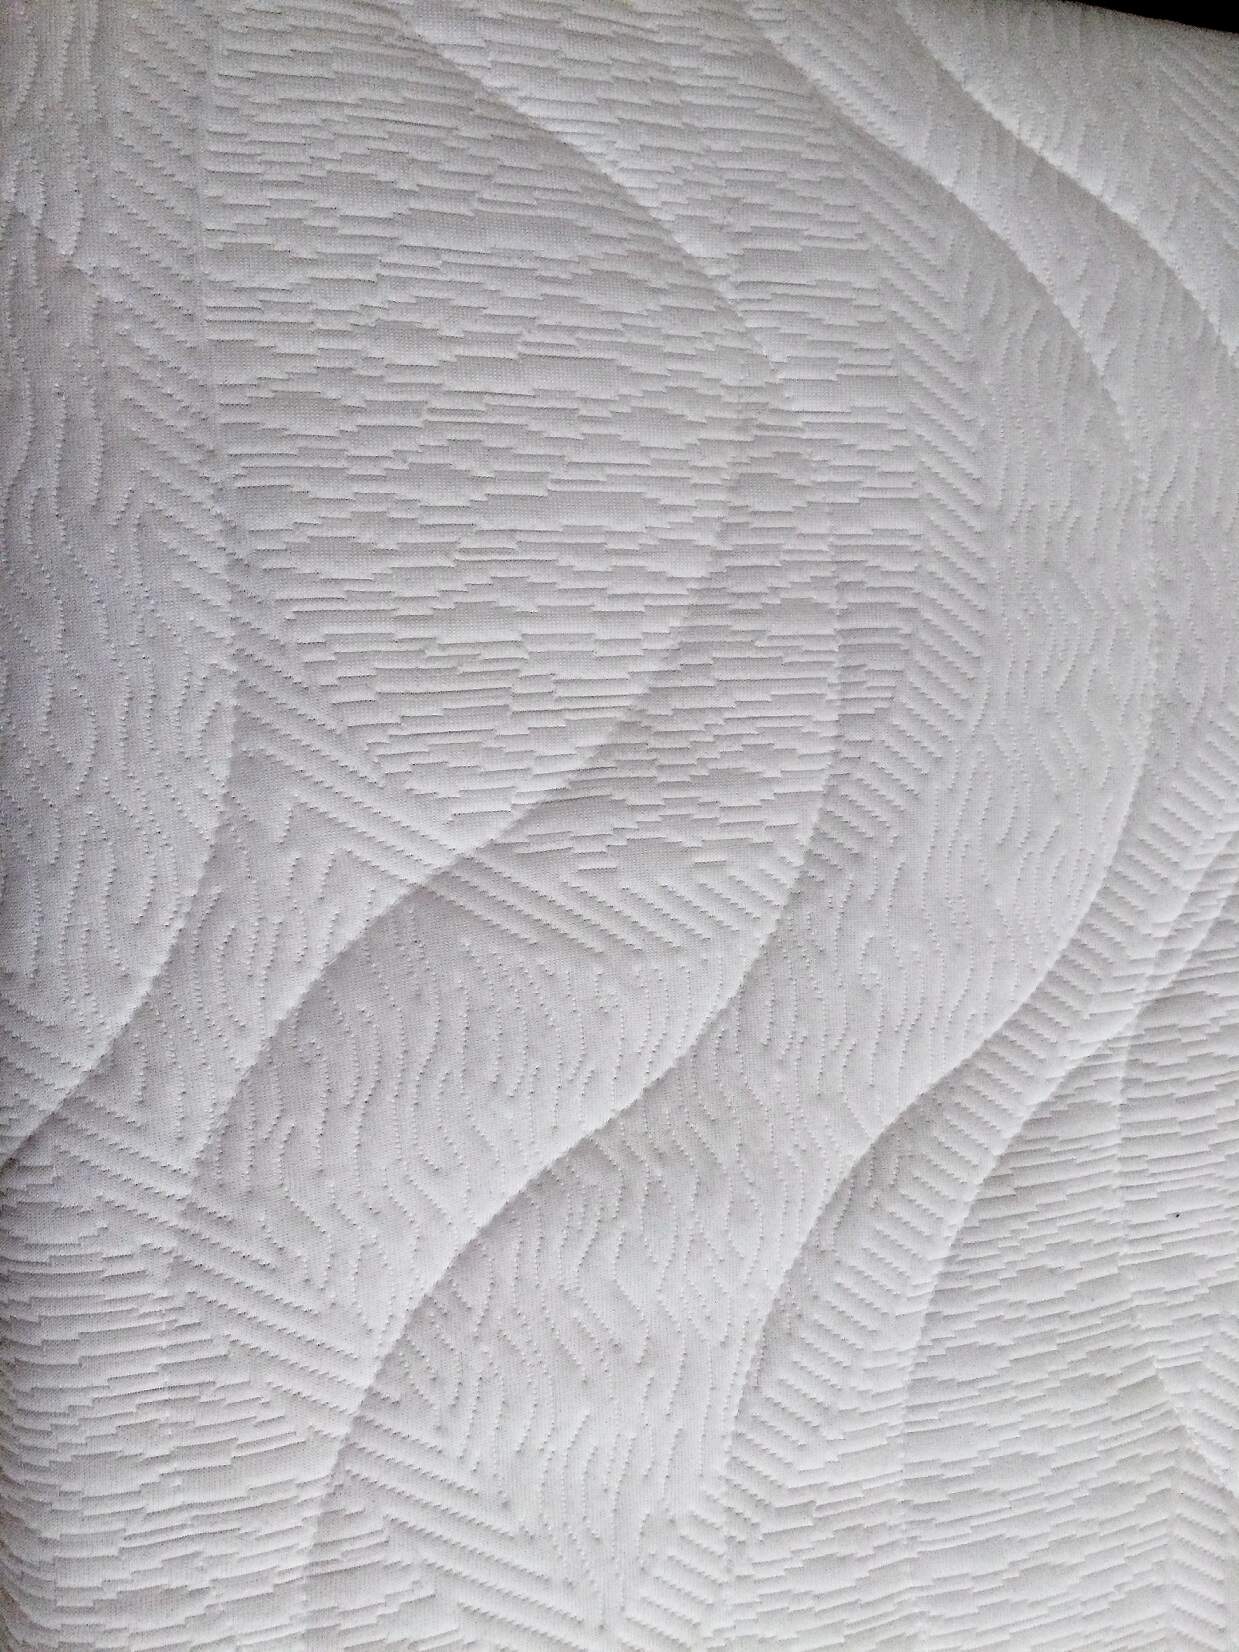 Saffie Saffier mattress detail.JPG